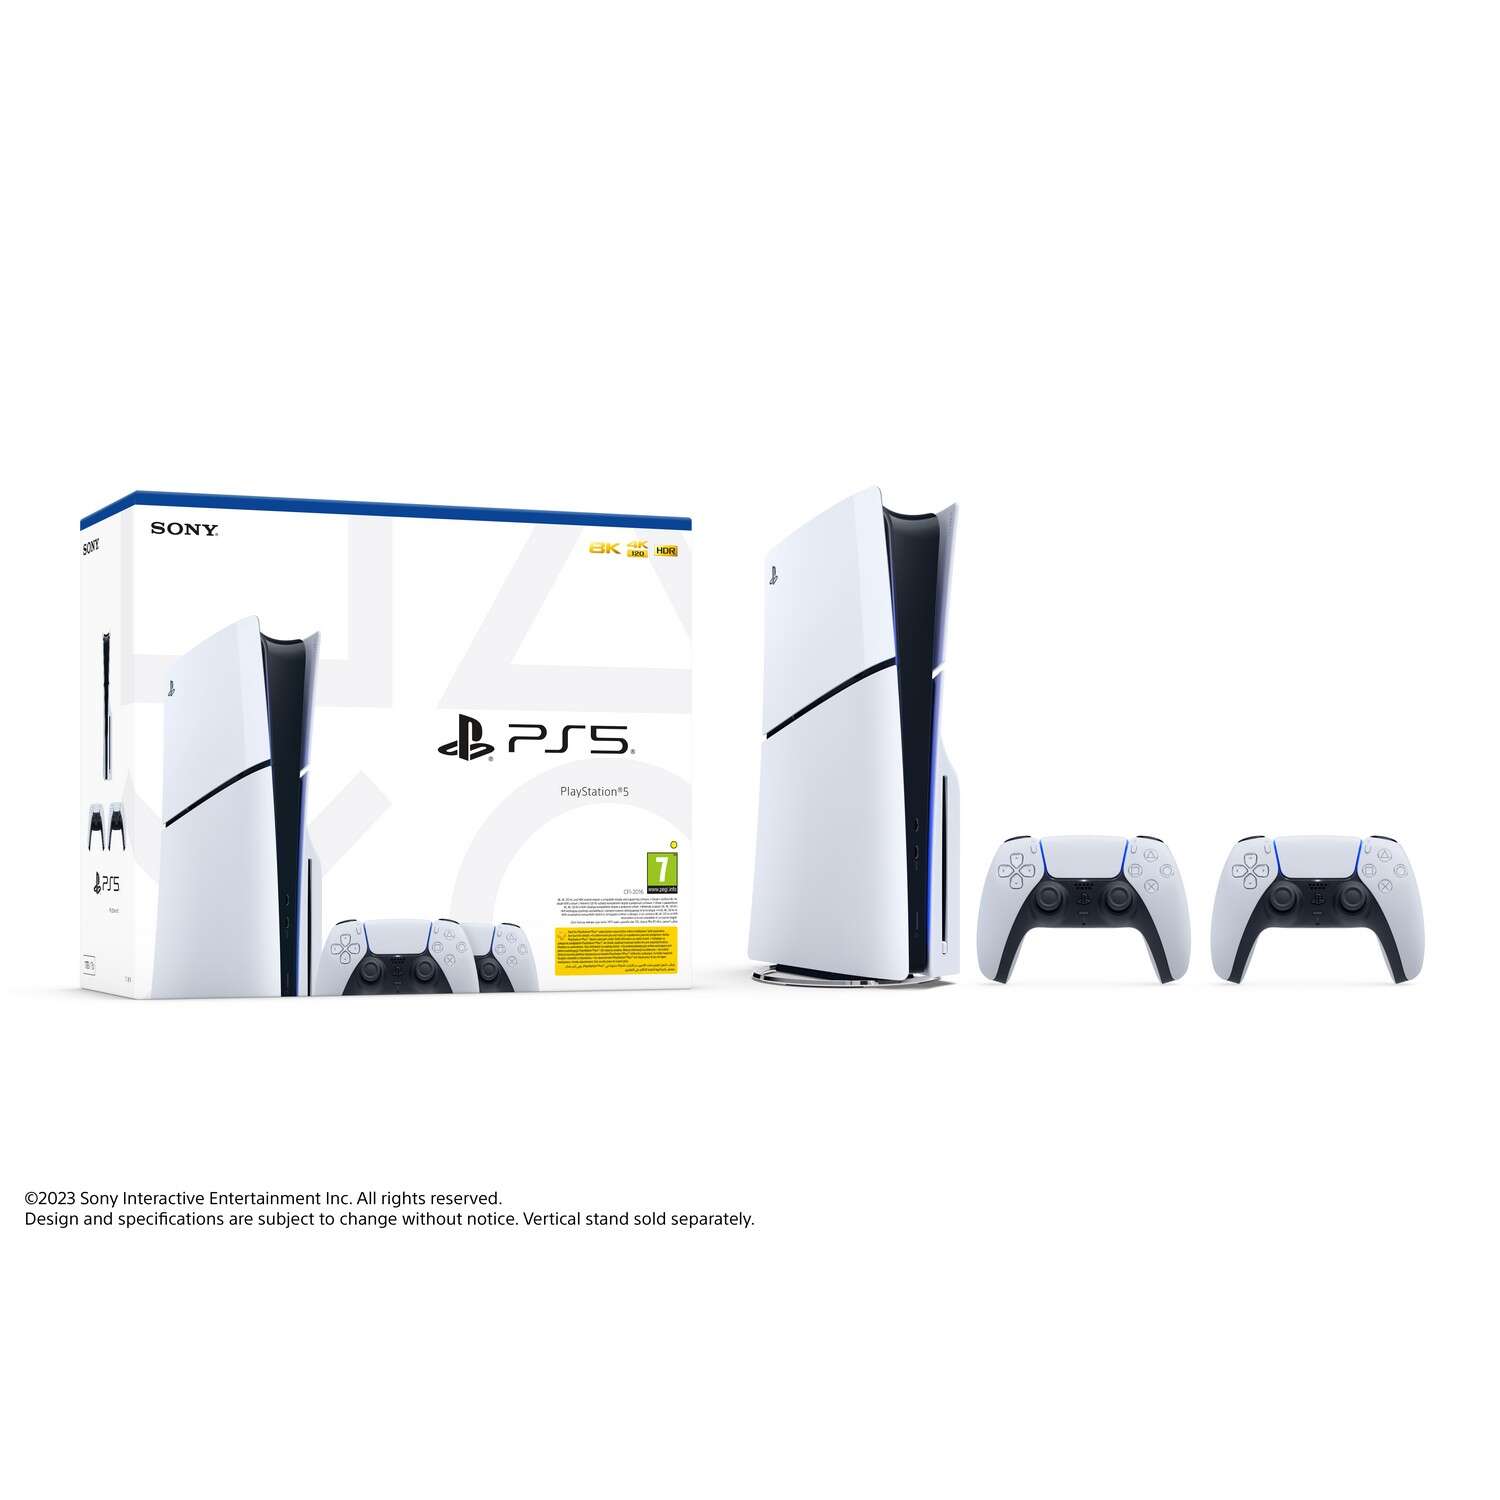 Playstation®5 konzol slim + 2 dualsense vezeték nélküli kontrolle...